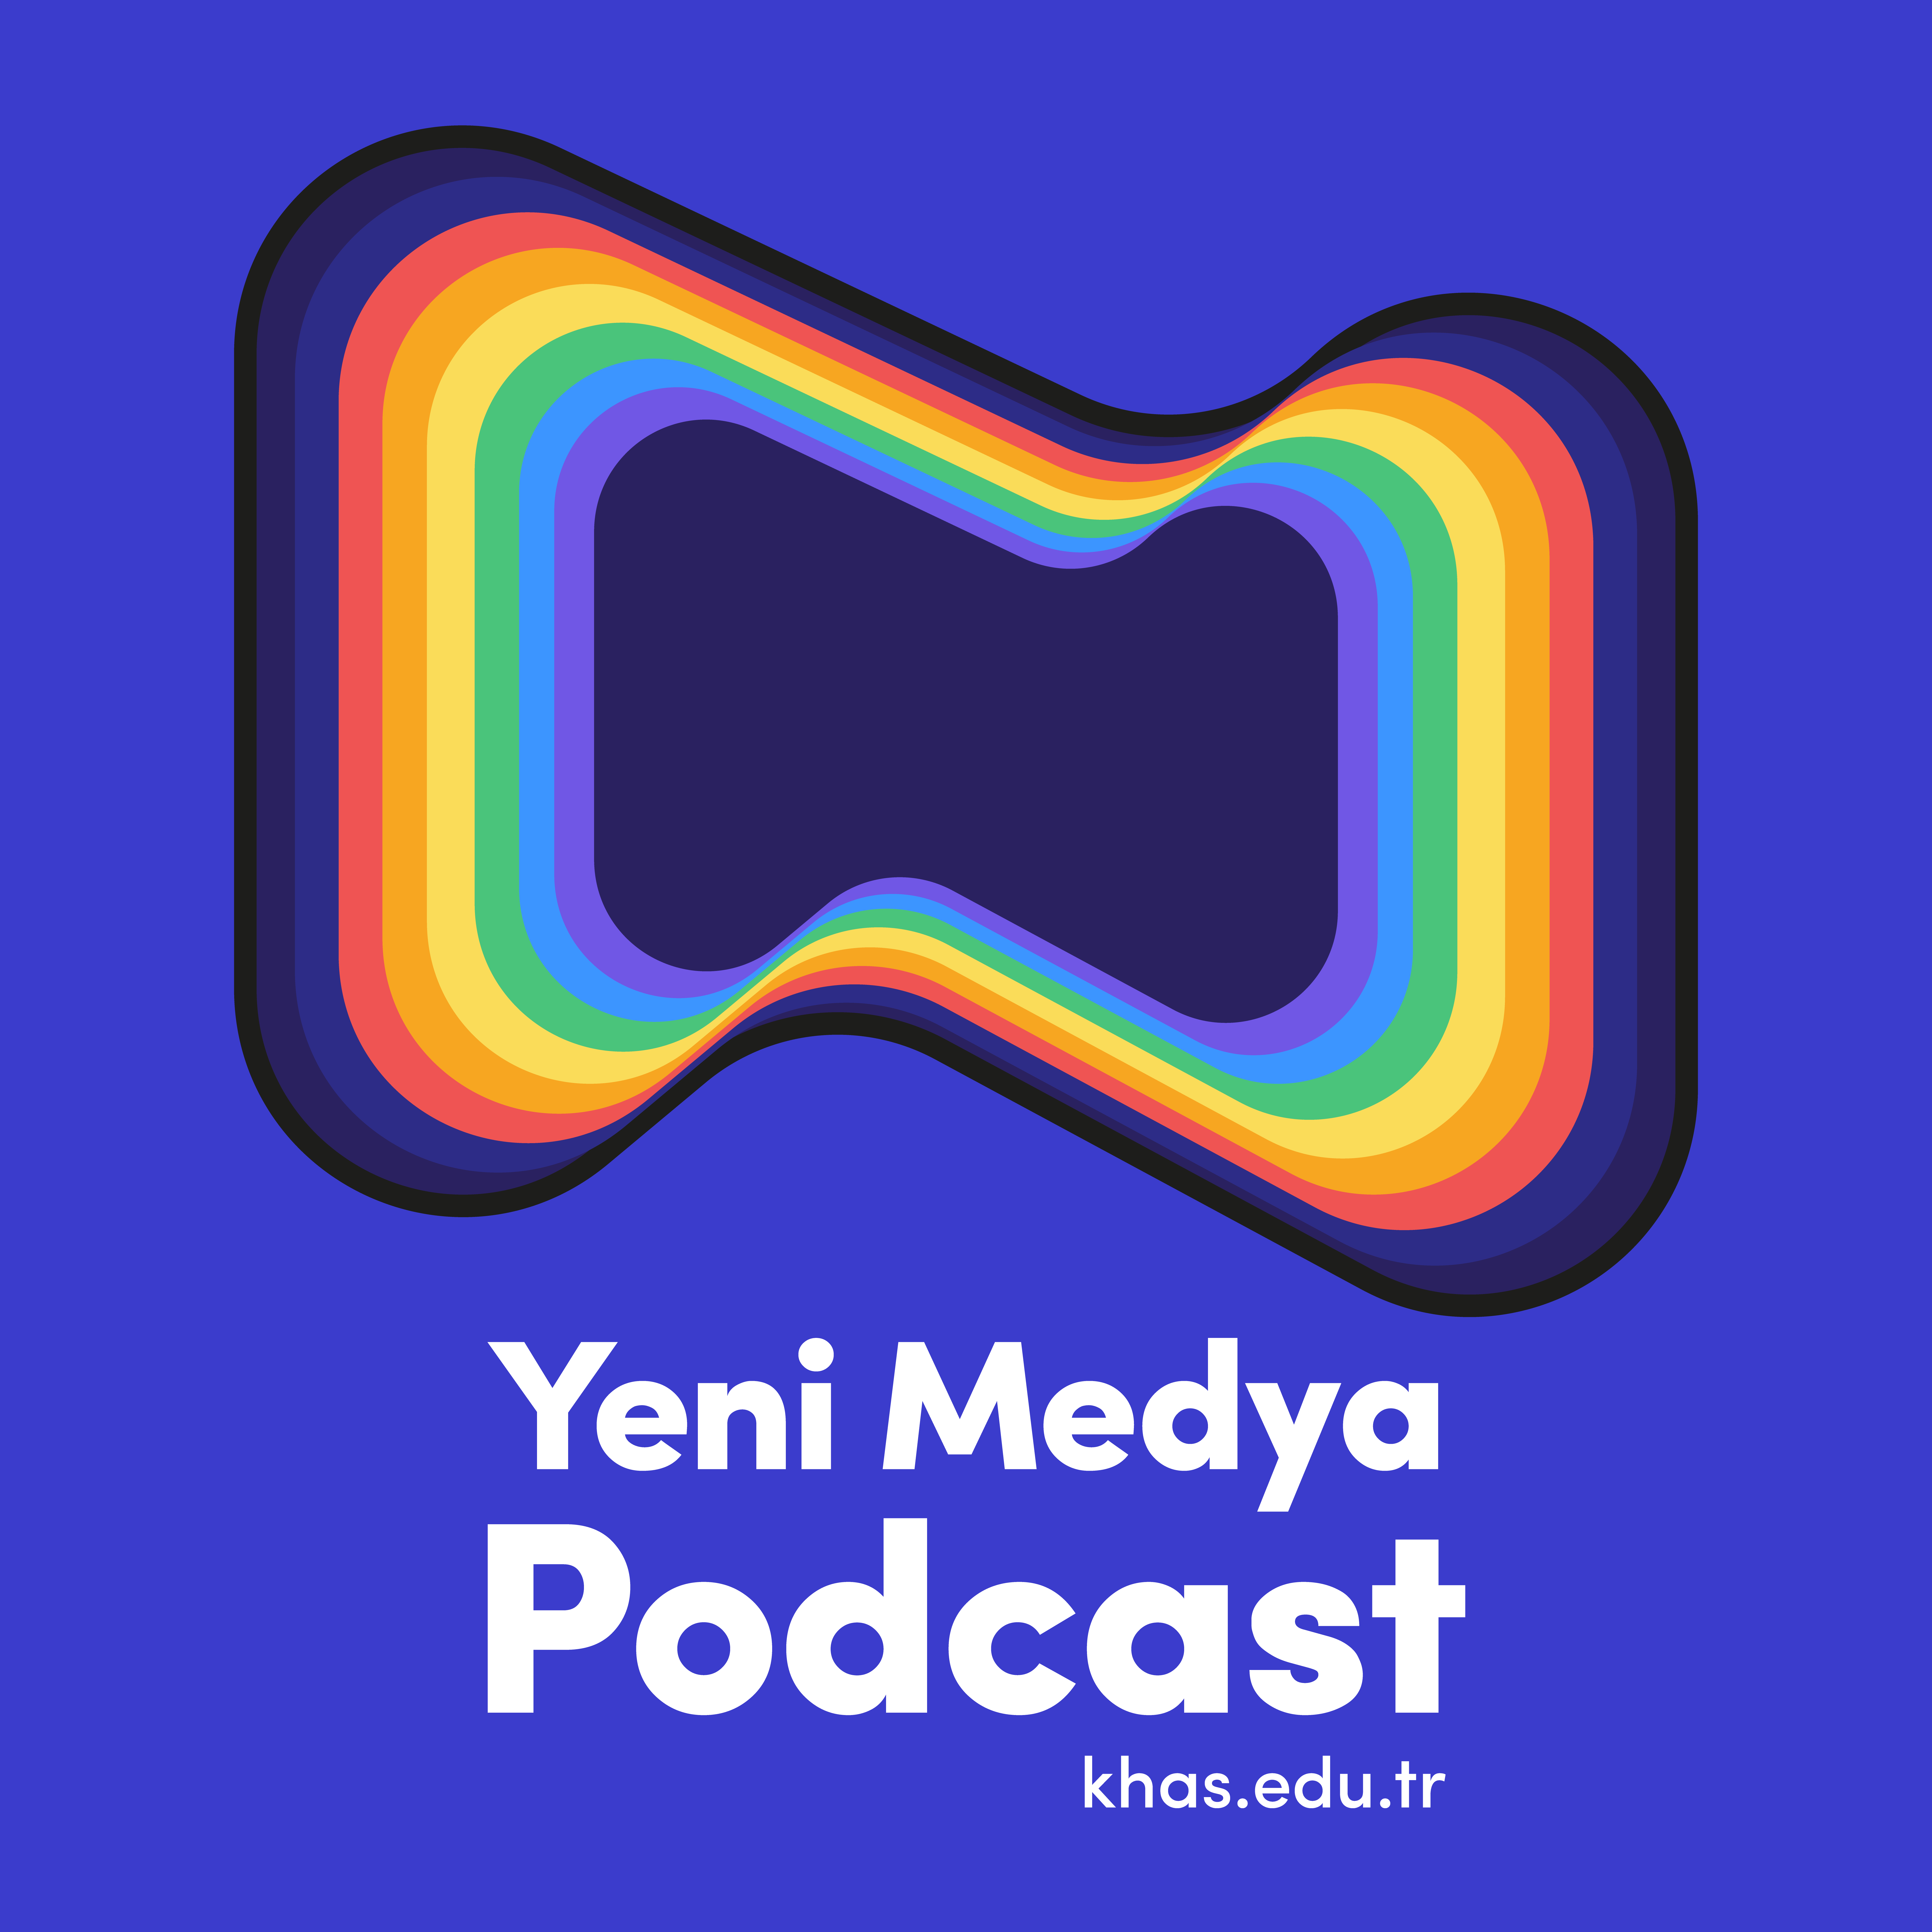 Yeni Medya Podcast